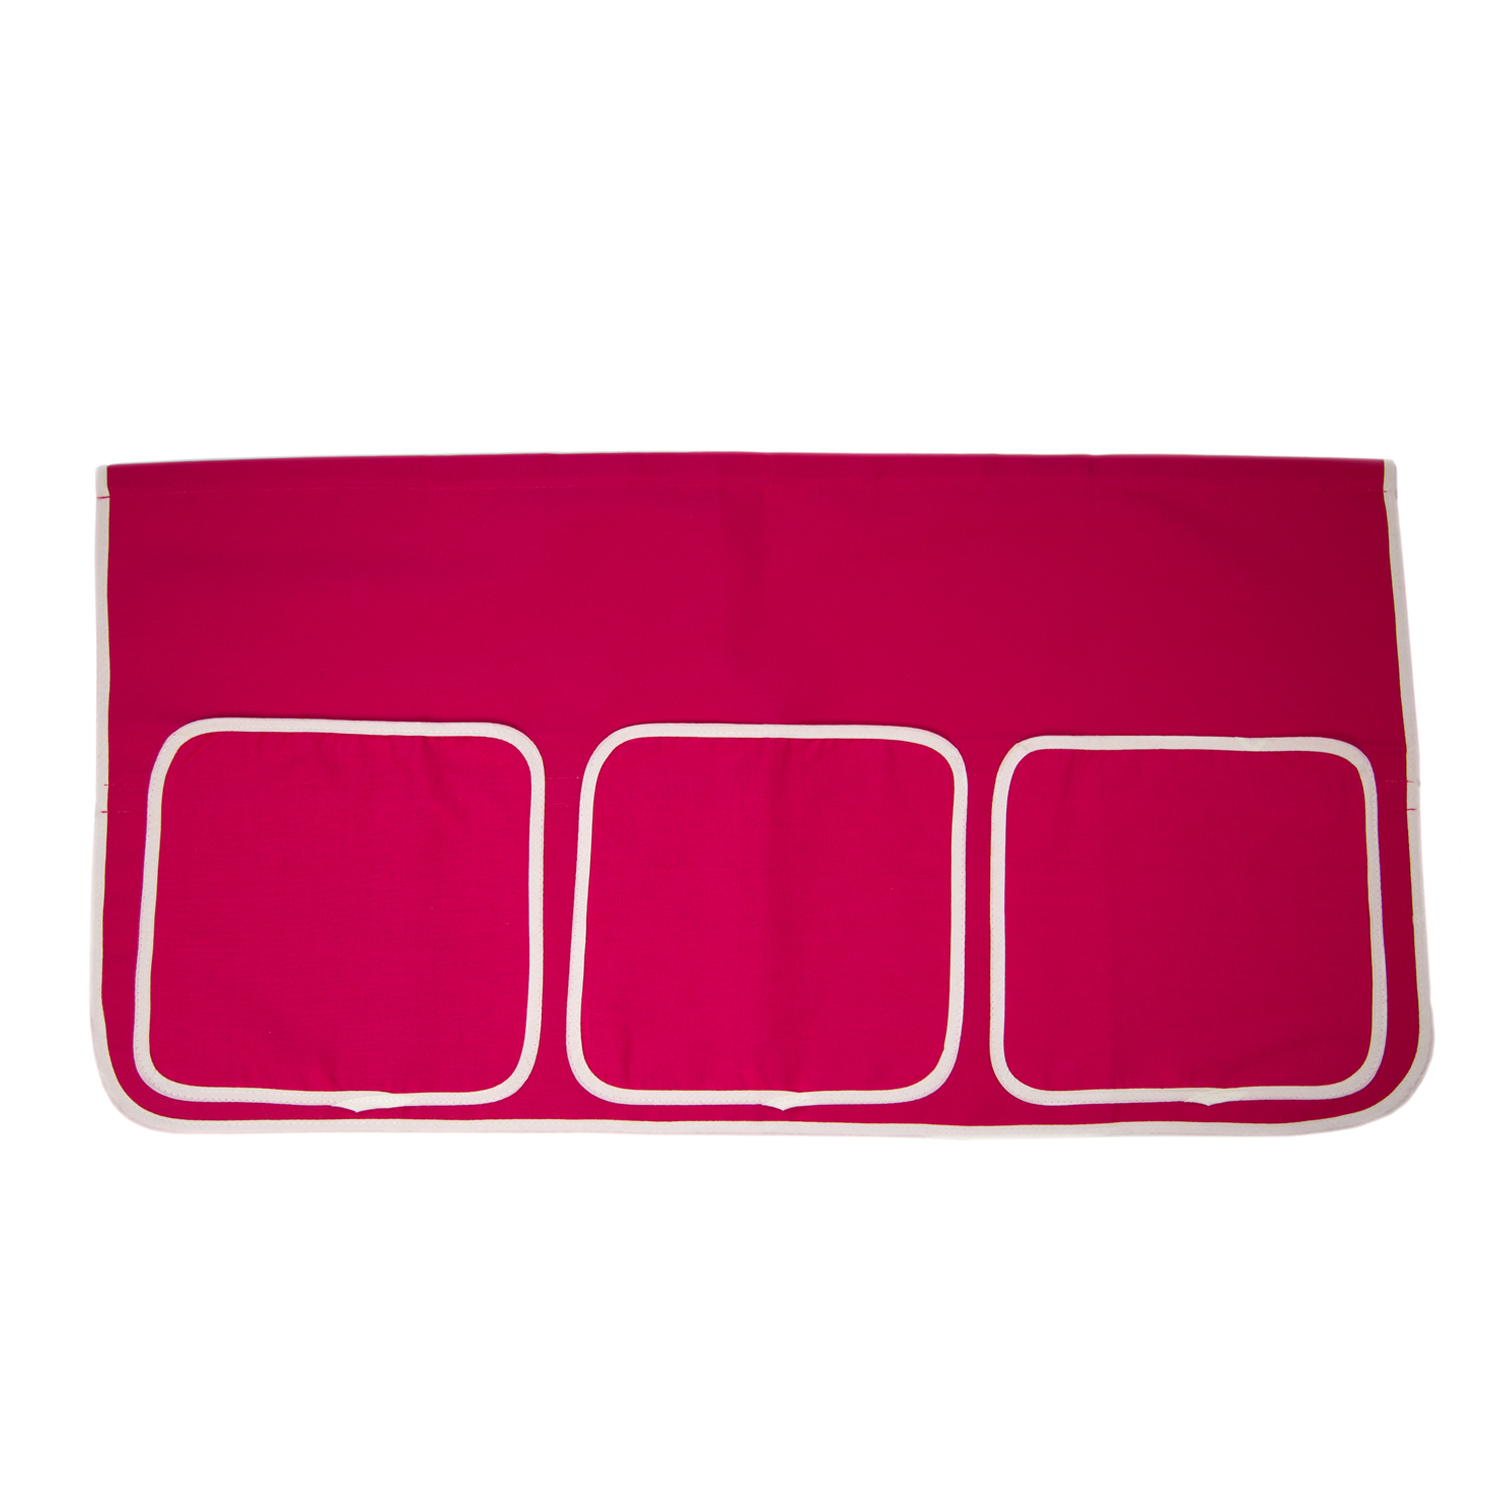 Betttasche Stofftasche für Hochbetten Tasche Kinderbett Pink Rot Baumwolle